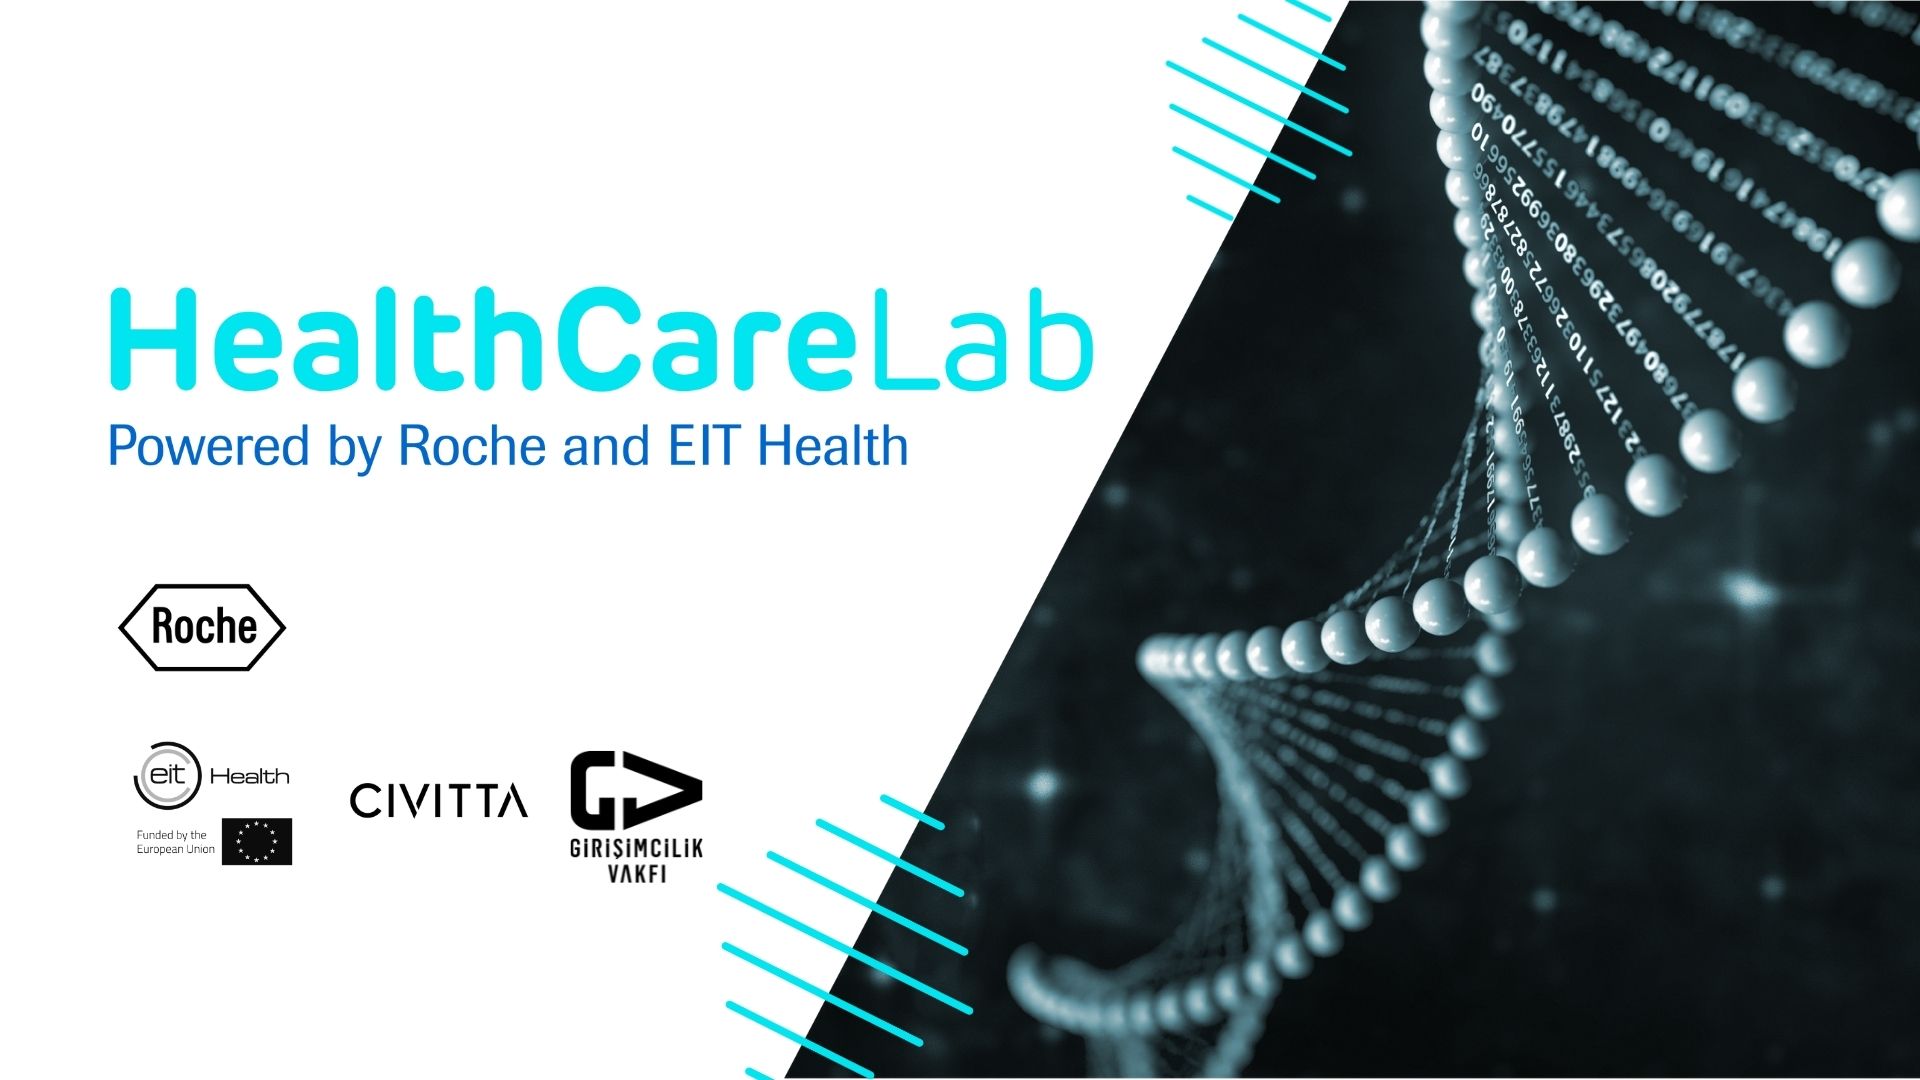 Dijital Sağlık Startupları Roche Healthcare Lab ile Büyüyecek